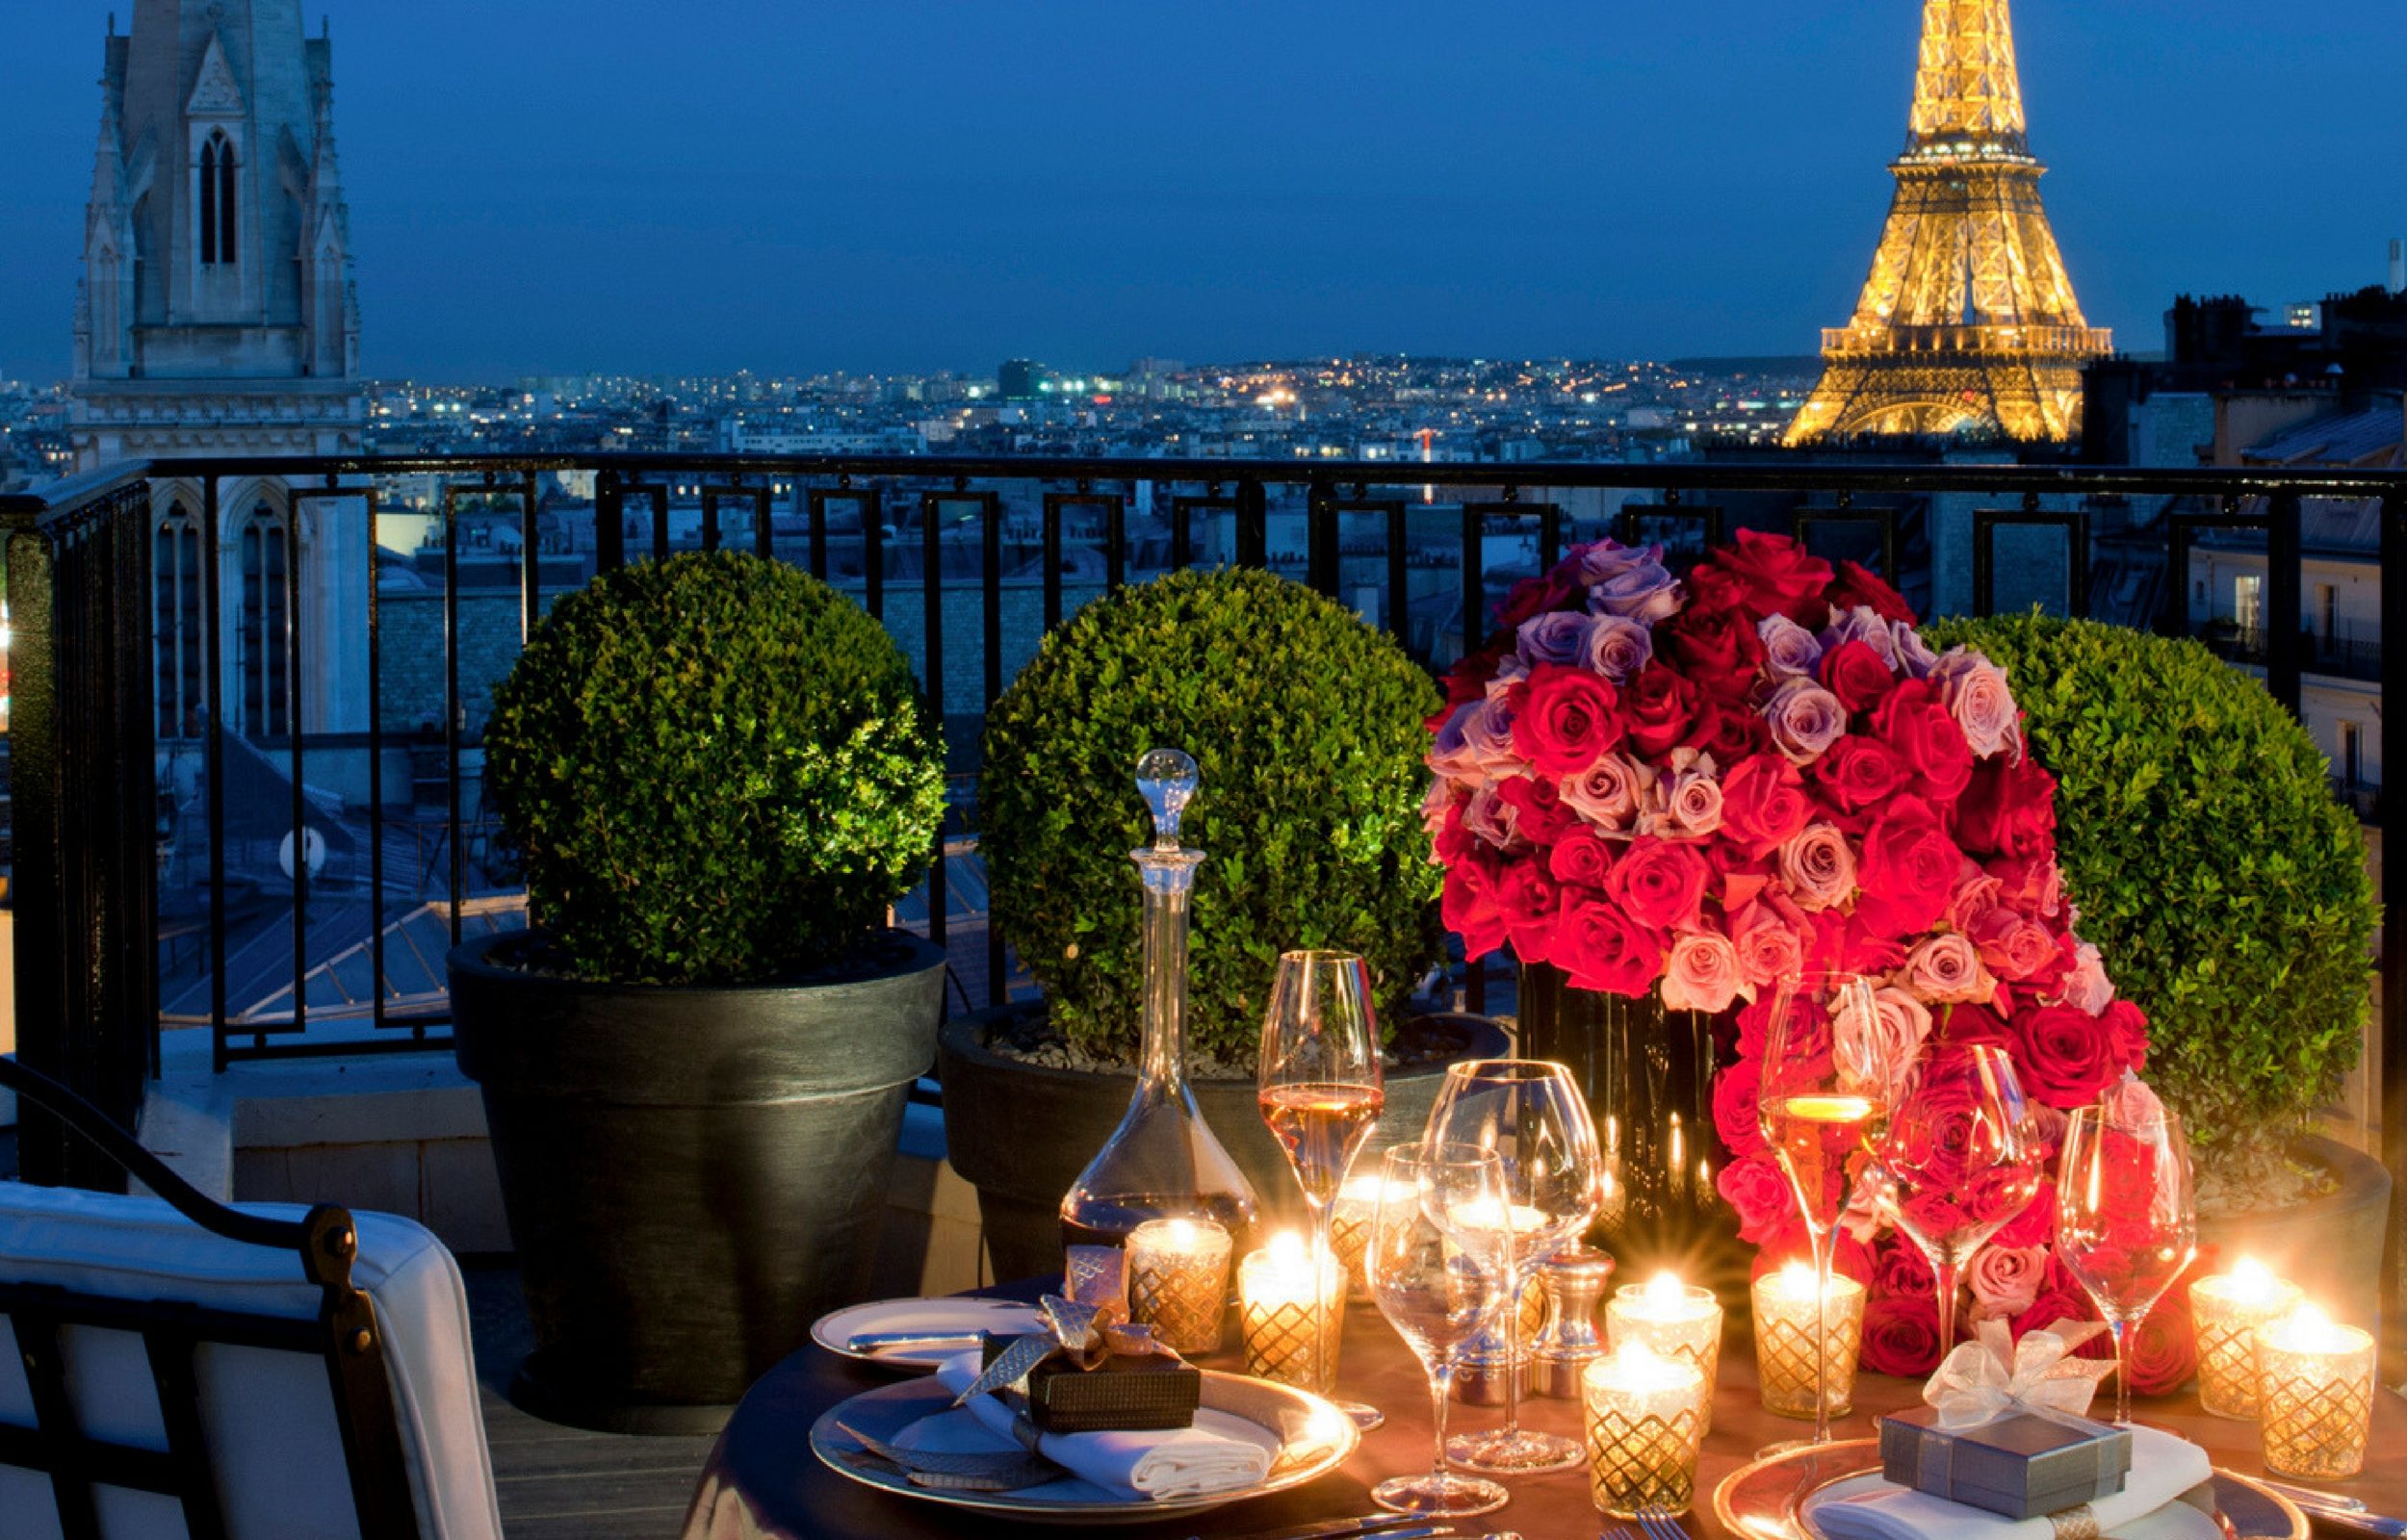 Изысканное место. Париж Эйфелева башня ресторан. Романтические места. Самые красивые места в Париже. Вечерний Париж.